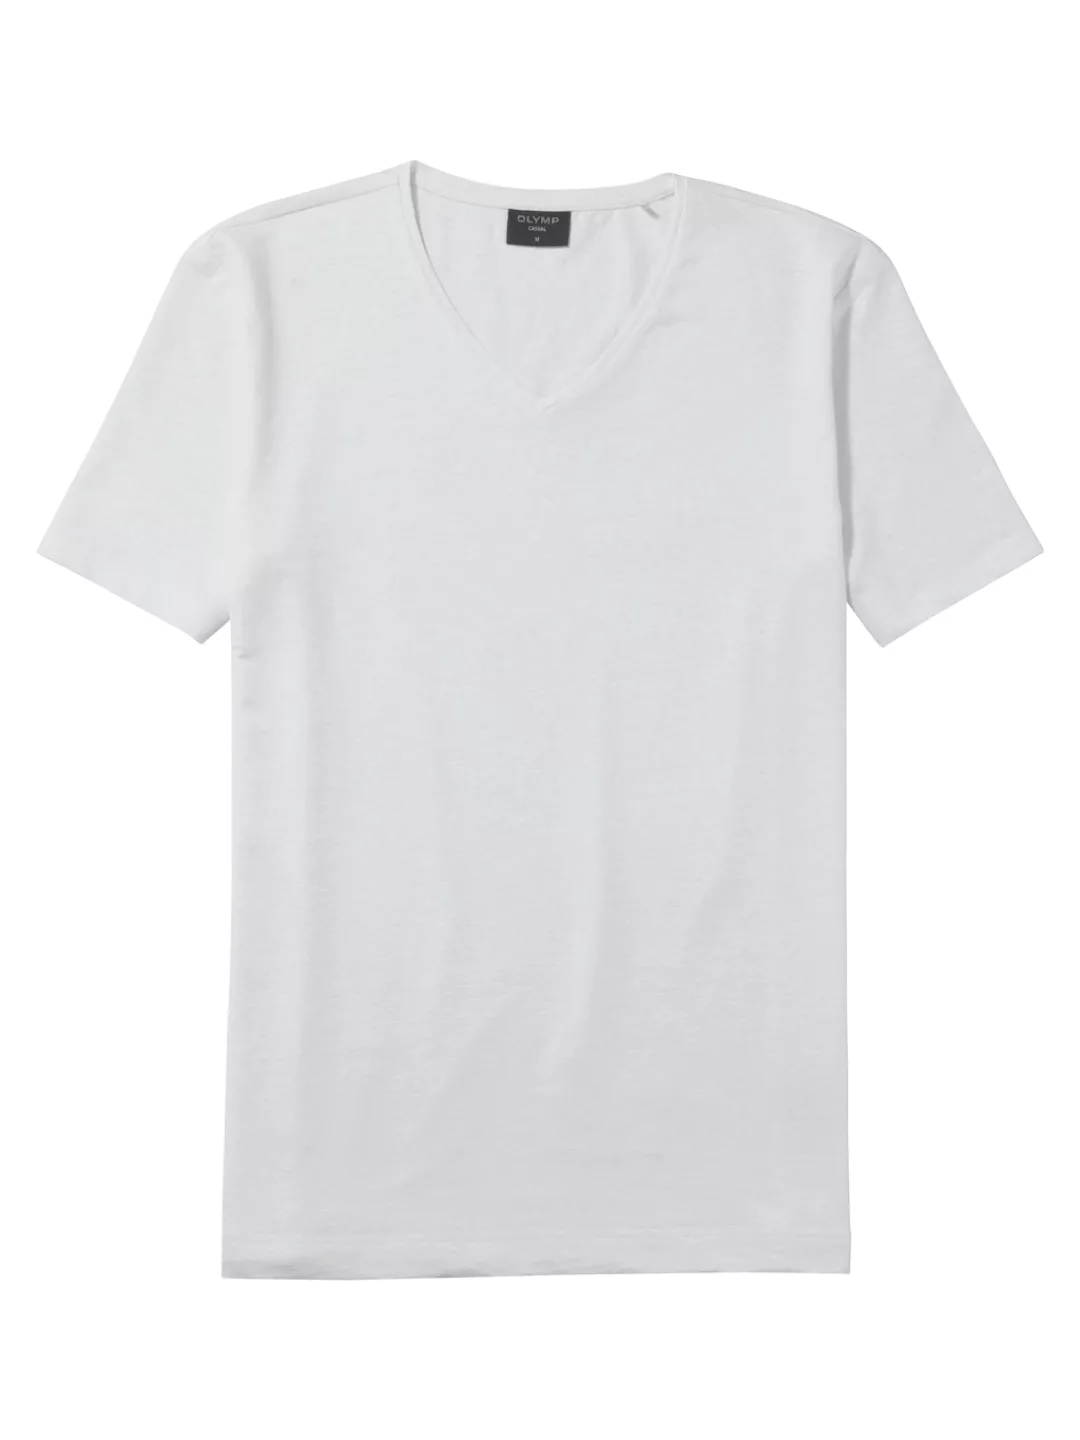 OLYMP V-Shirt Casual aus Leinenmischung günstig online kaufen